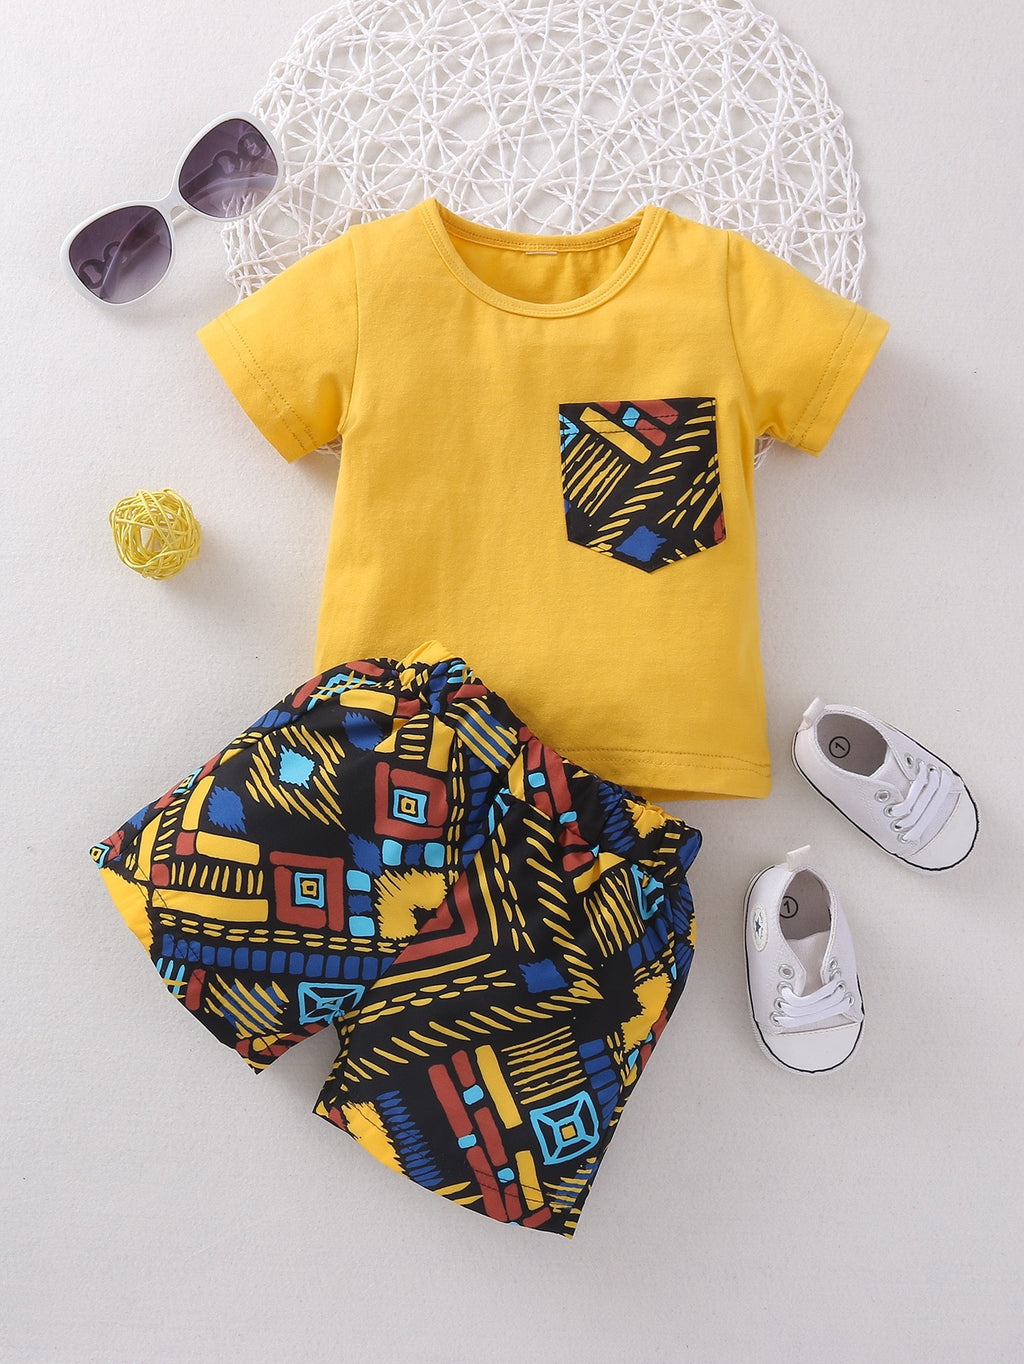 Unisex Baby shorts and tee shirt set